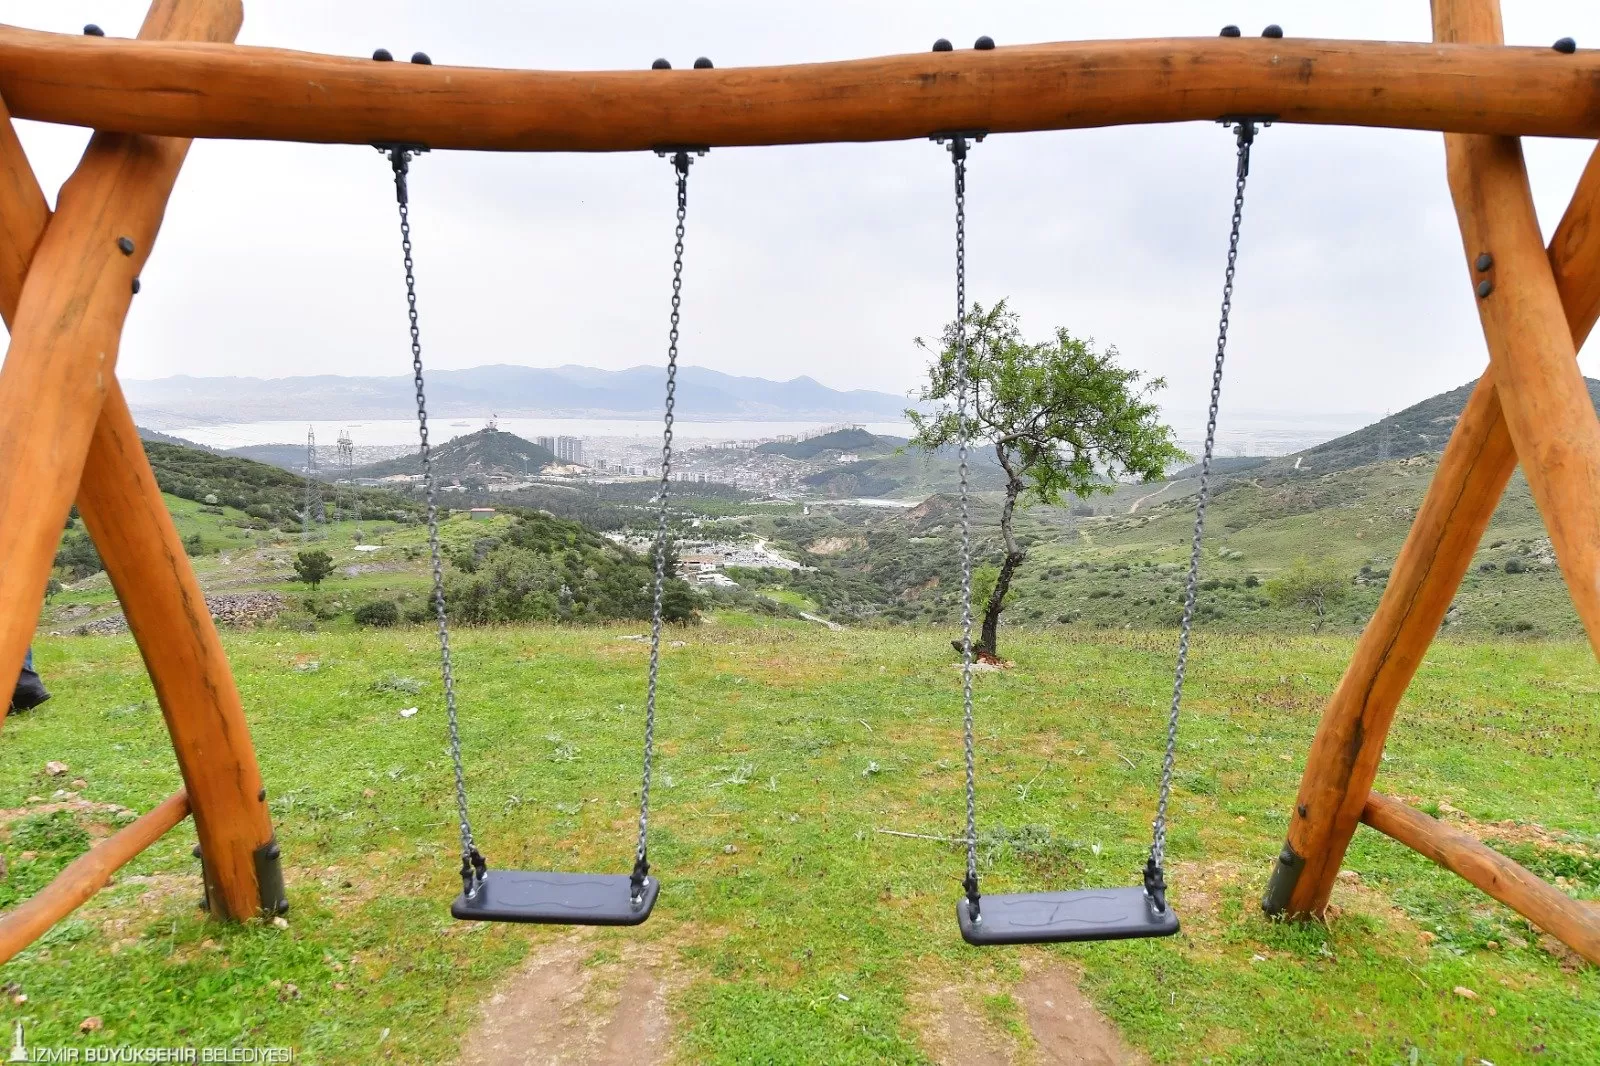 İzmir Büyükşehir Belediyesi, İzmirlilerin doğayla buluşma noktası olacak 7. Yaşayan Parkı Kovankayası'nı hizmete açtı. 